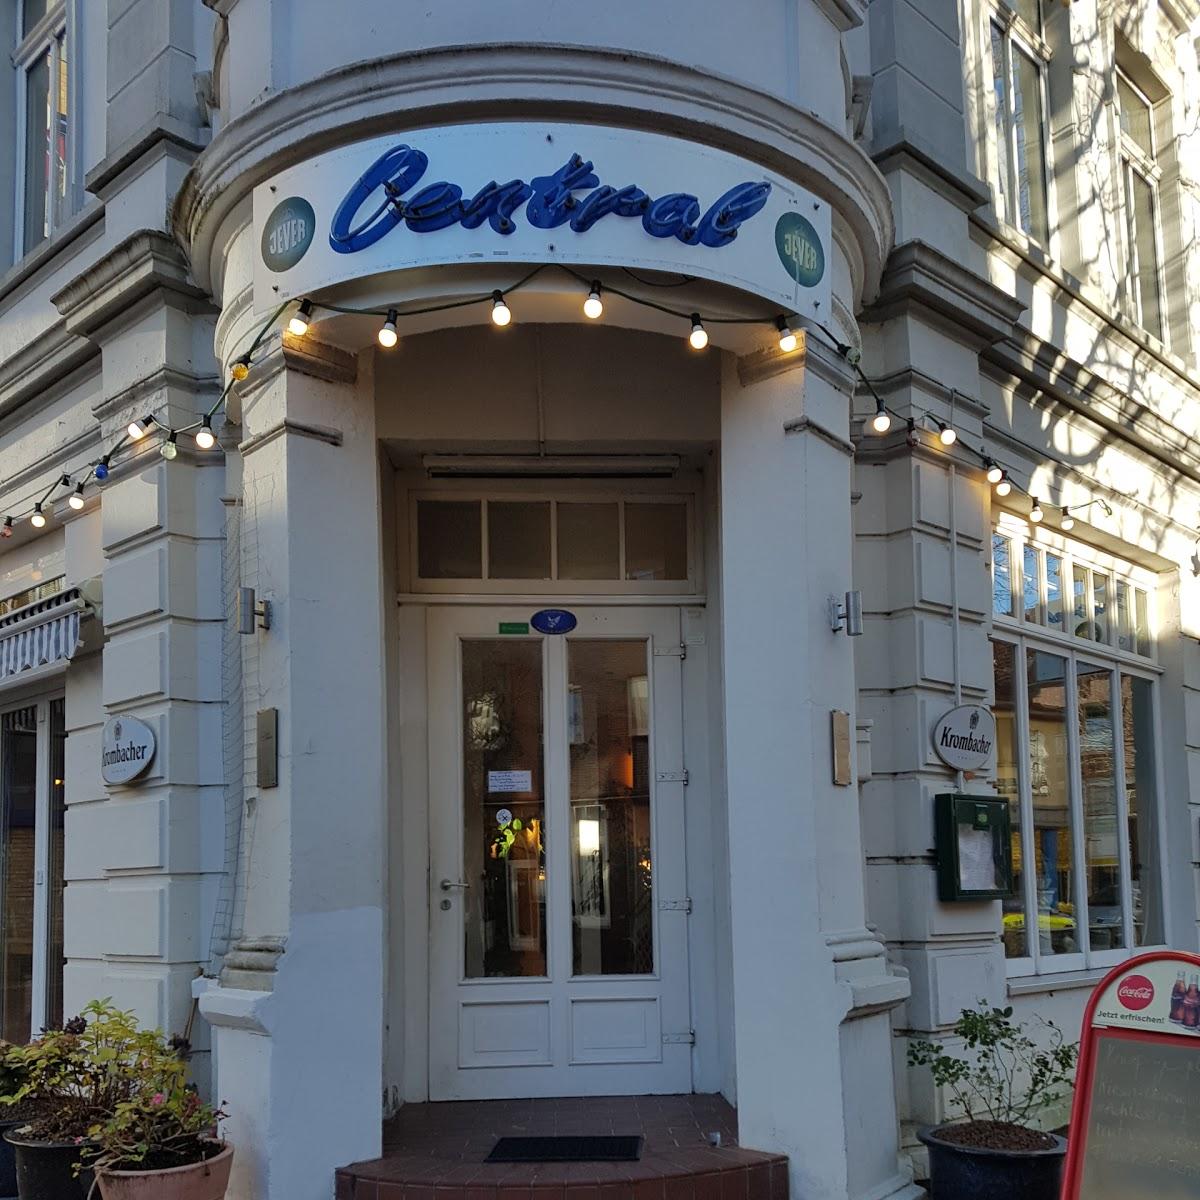 Restaurant "Bistro Central" in Wilhelmshaven